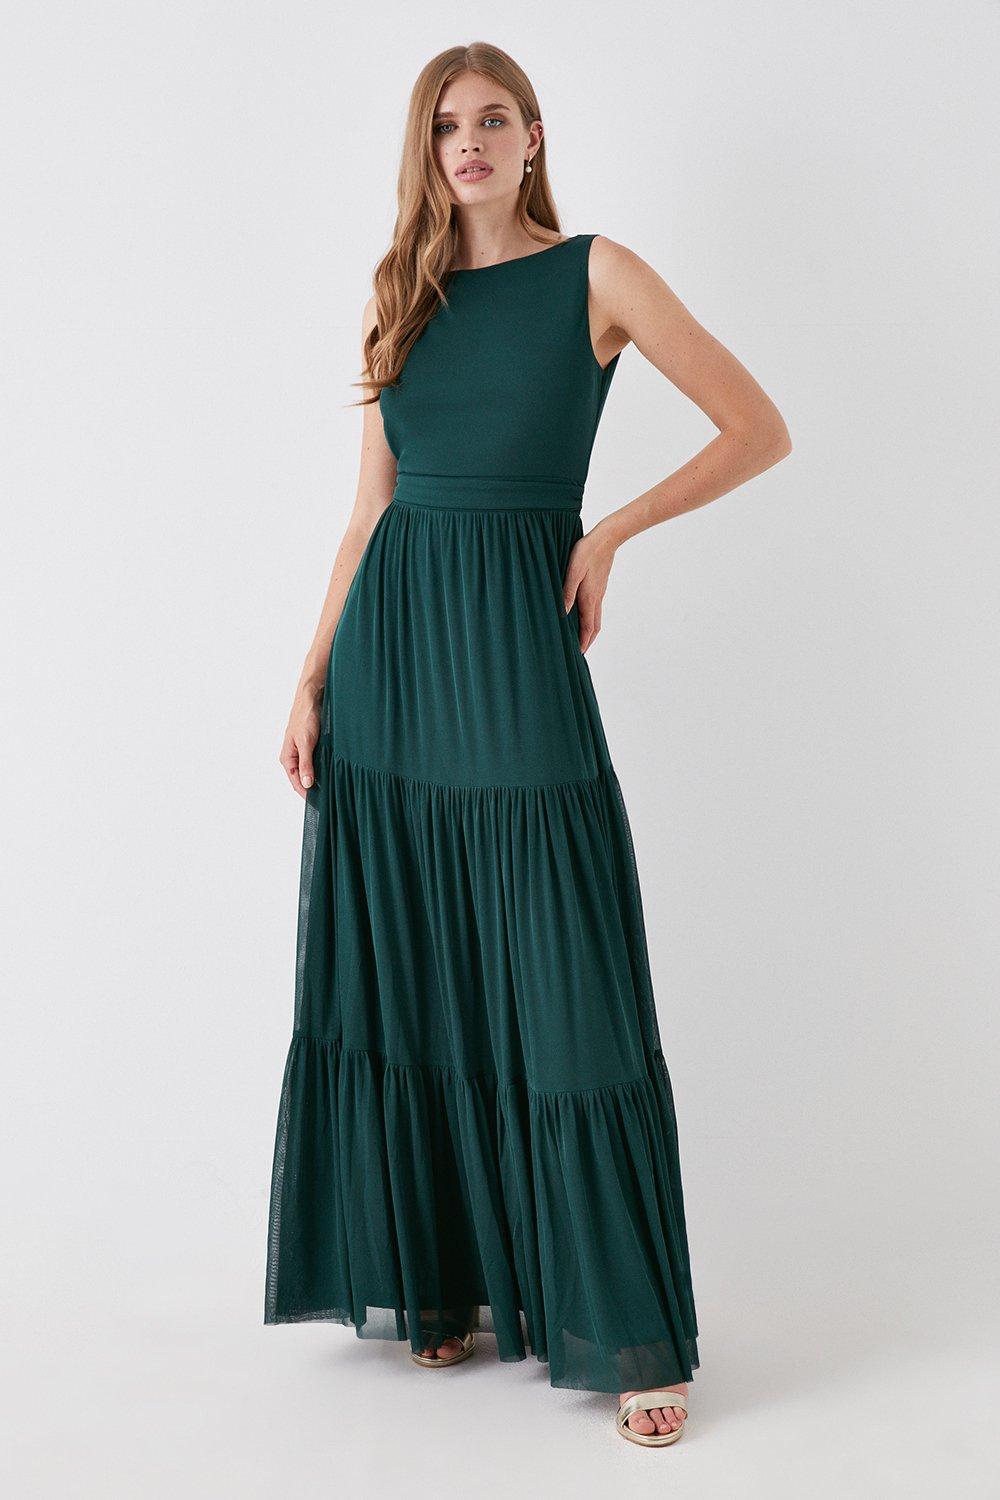 Tiered Skirt Stretch Mesh Bridesmaids Dress - Green